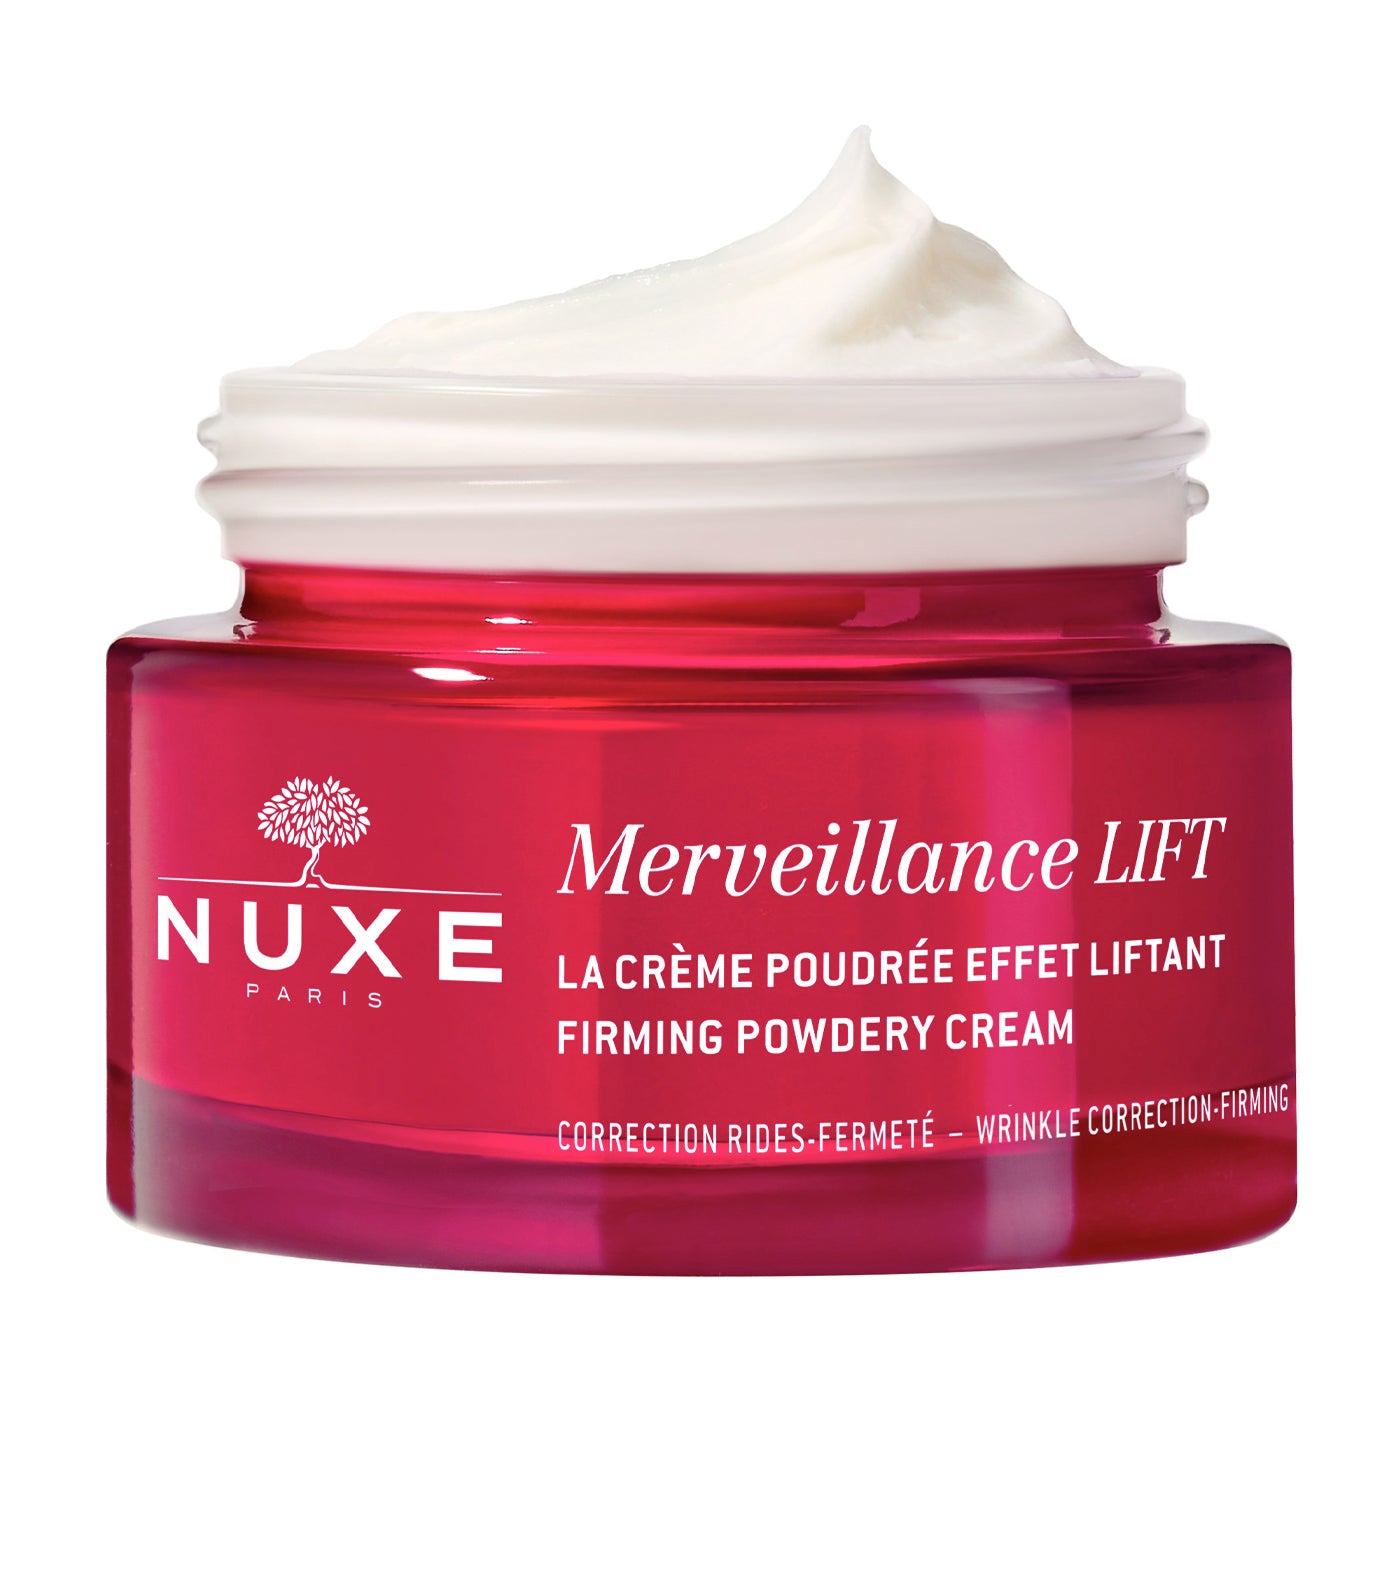 Merveillance LIFT - Firming Powdery Cream